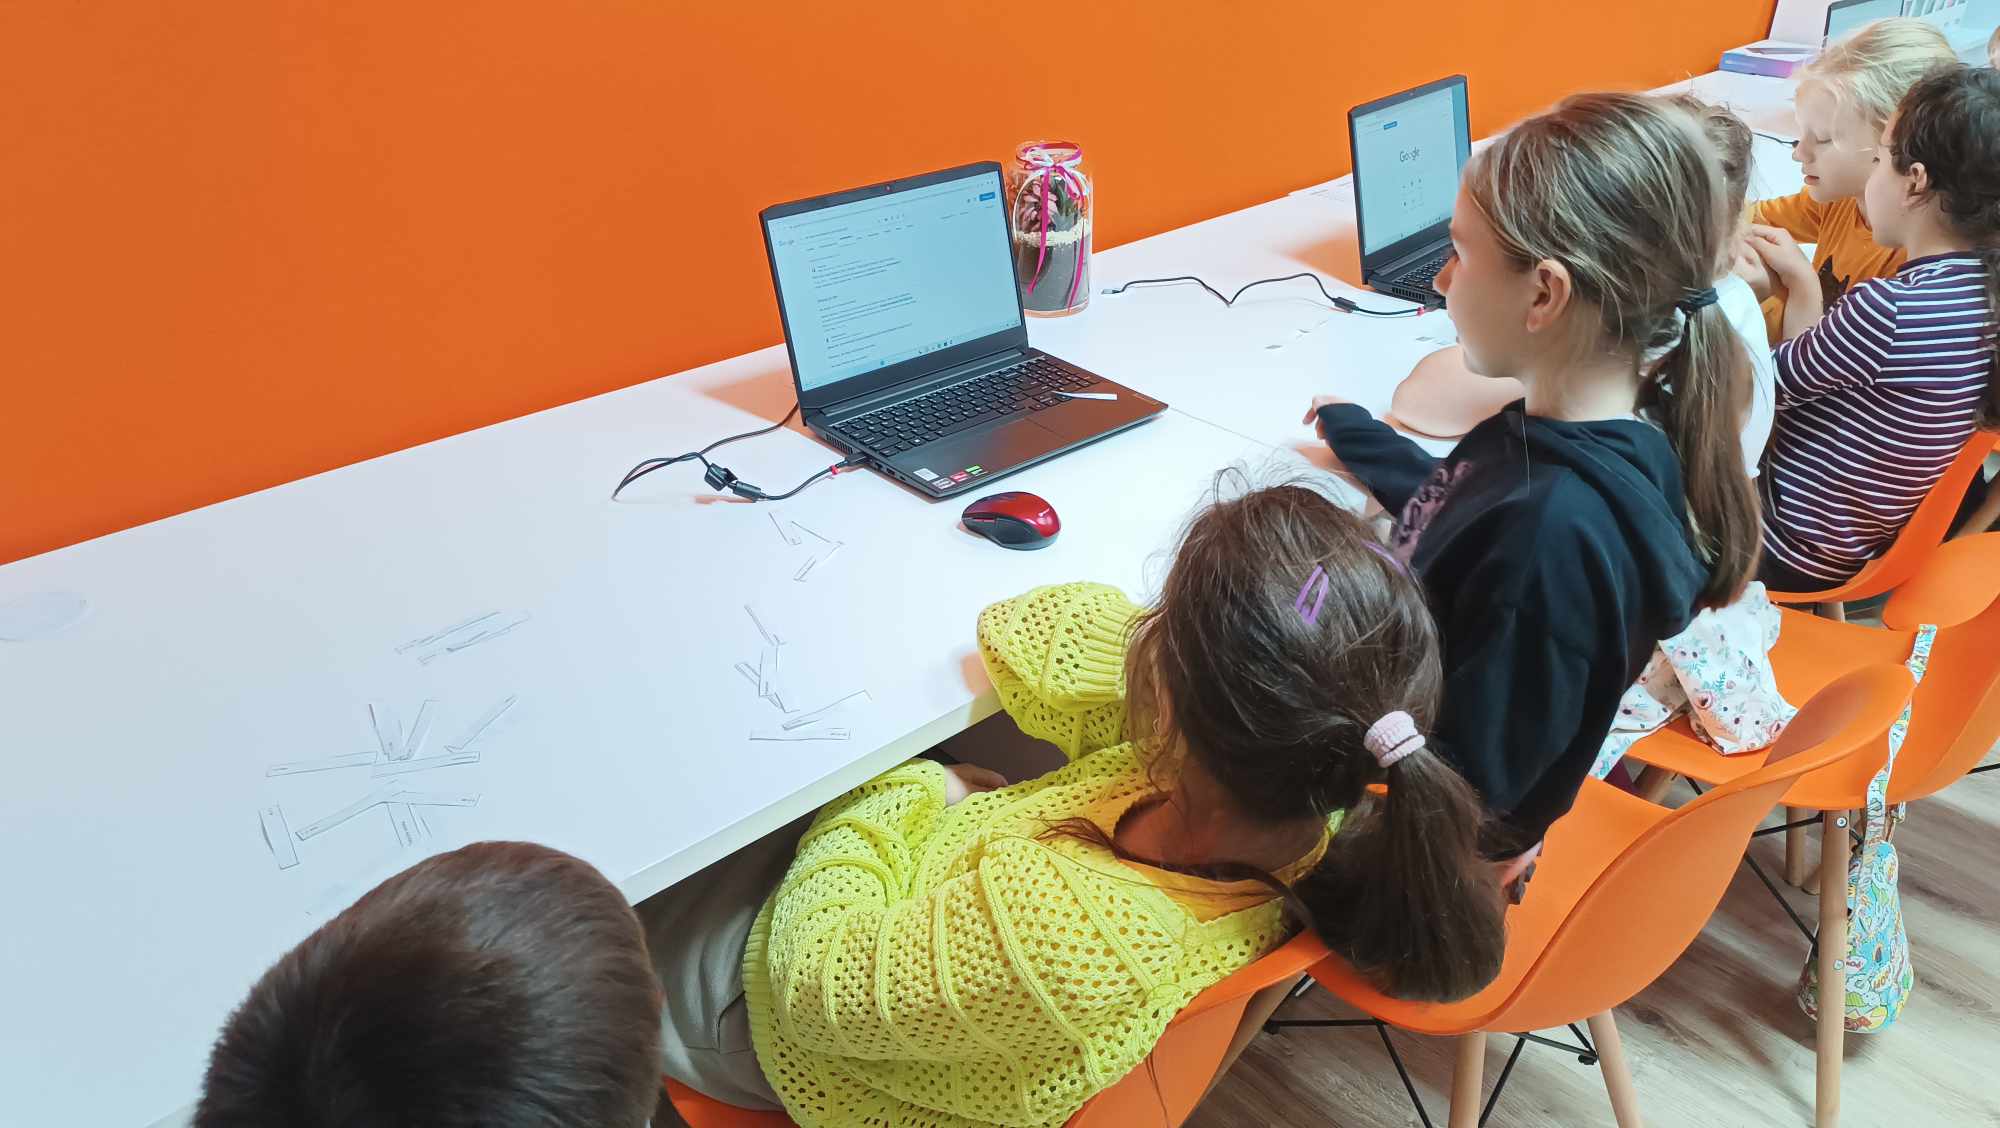 dziewczynki siedzące przy laptopach w pracowni orange